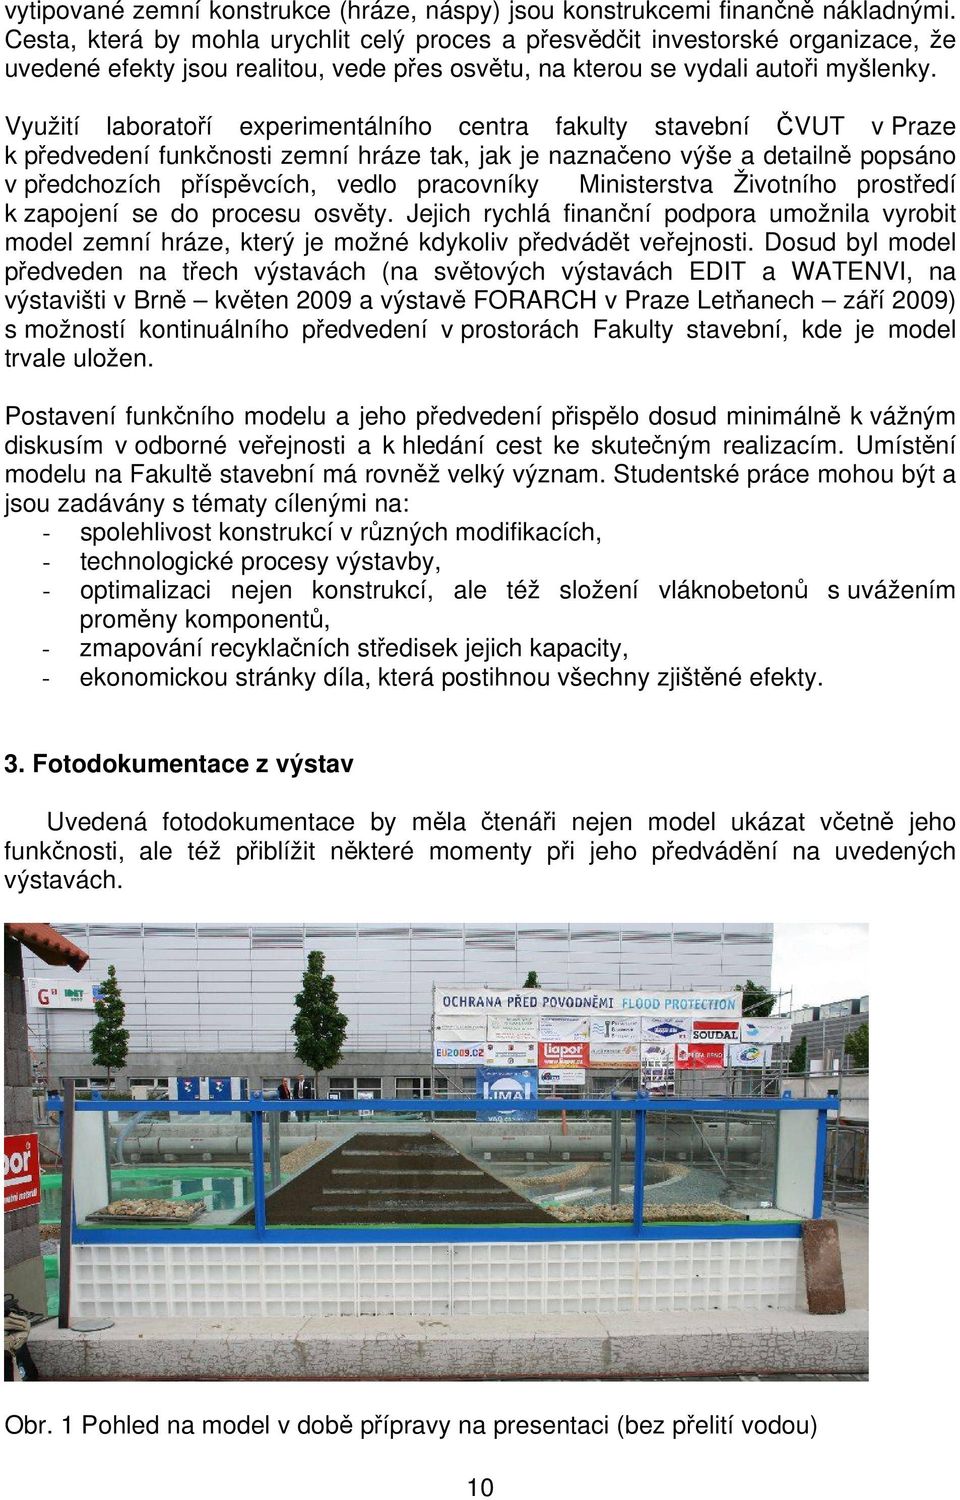 Využití laboratoří experimentálního centra fakulty stavební ČVUT v Praze k předvedení funkčnosti zemní hráze tak, jak je naznačeno výše a detailně popsáno v předchozích příspěvcích, vedlo pracovníky